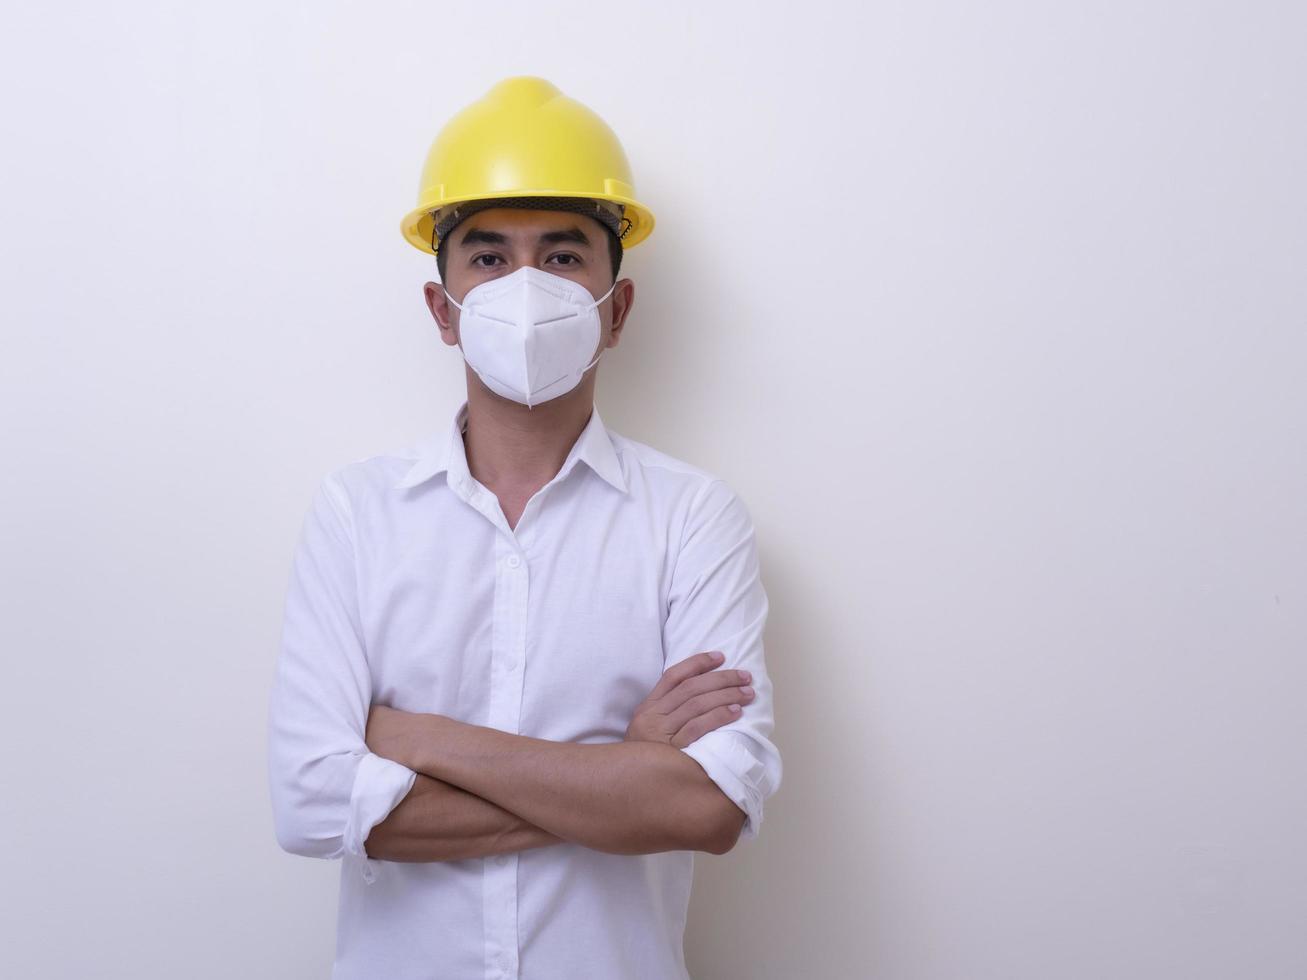 trabalhadores industriais asiáticos usam capacetes amarelos, usam máscaras protetoras para sua saúde foto